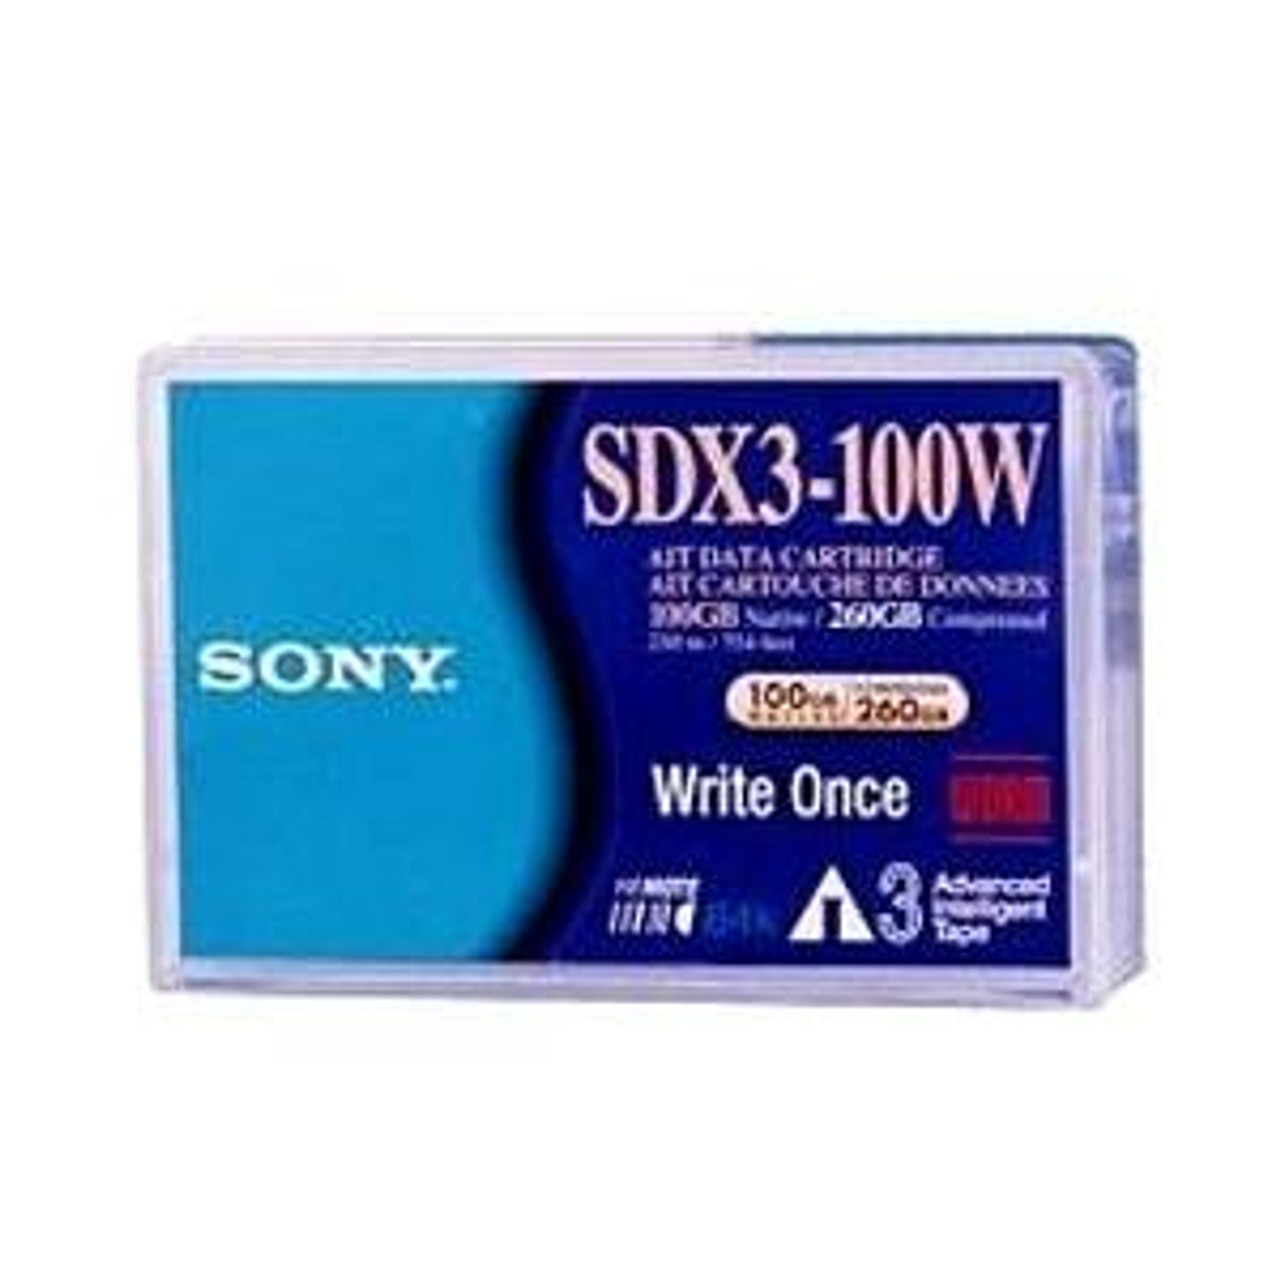 SDX3100W//AWW - Sony AIT-3 Tape Cartridge - AIT AIT-3 - 100GB (Native) / 260GB (Compressed)